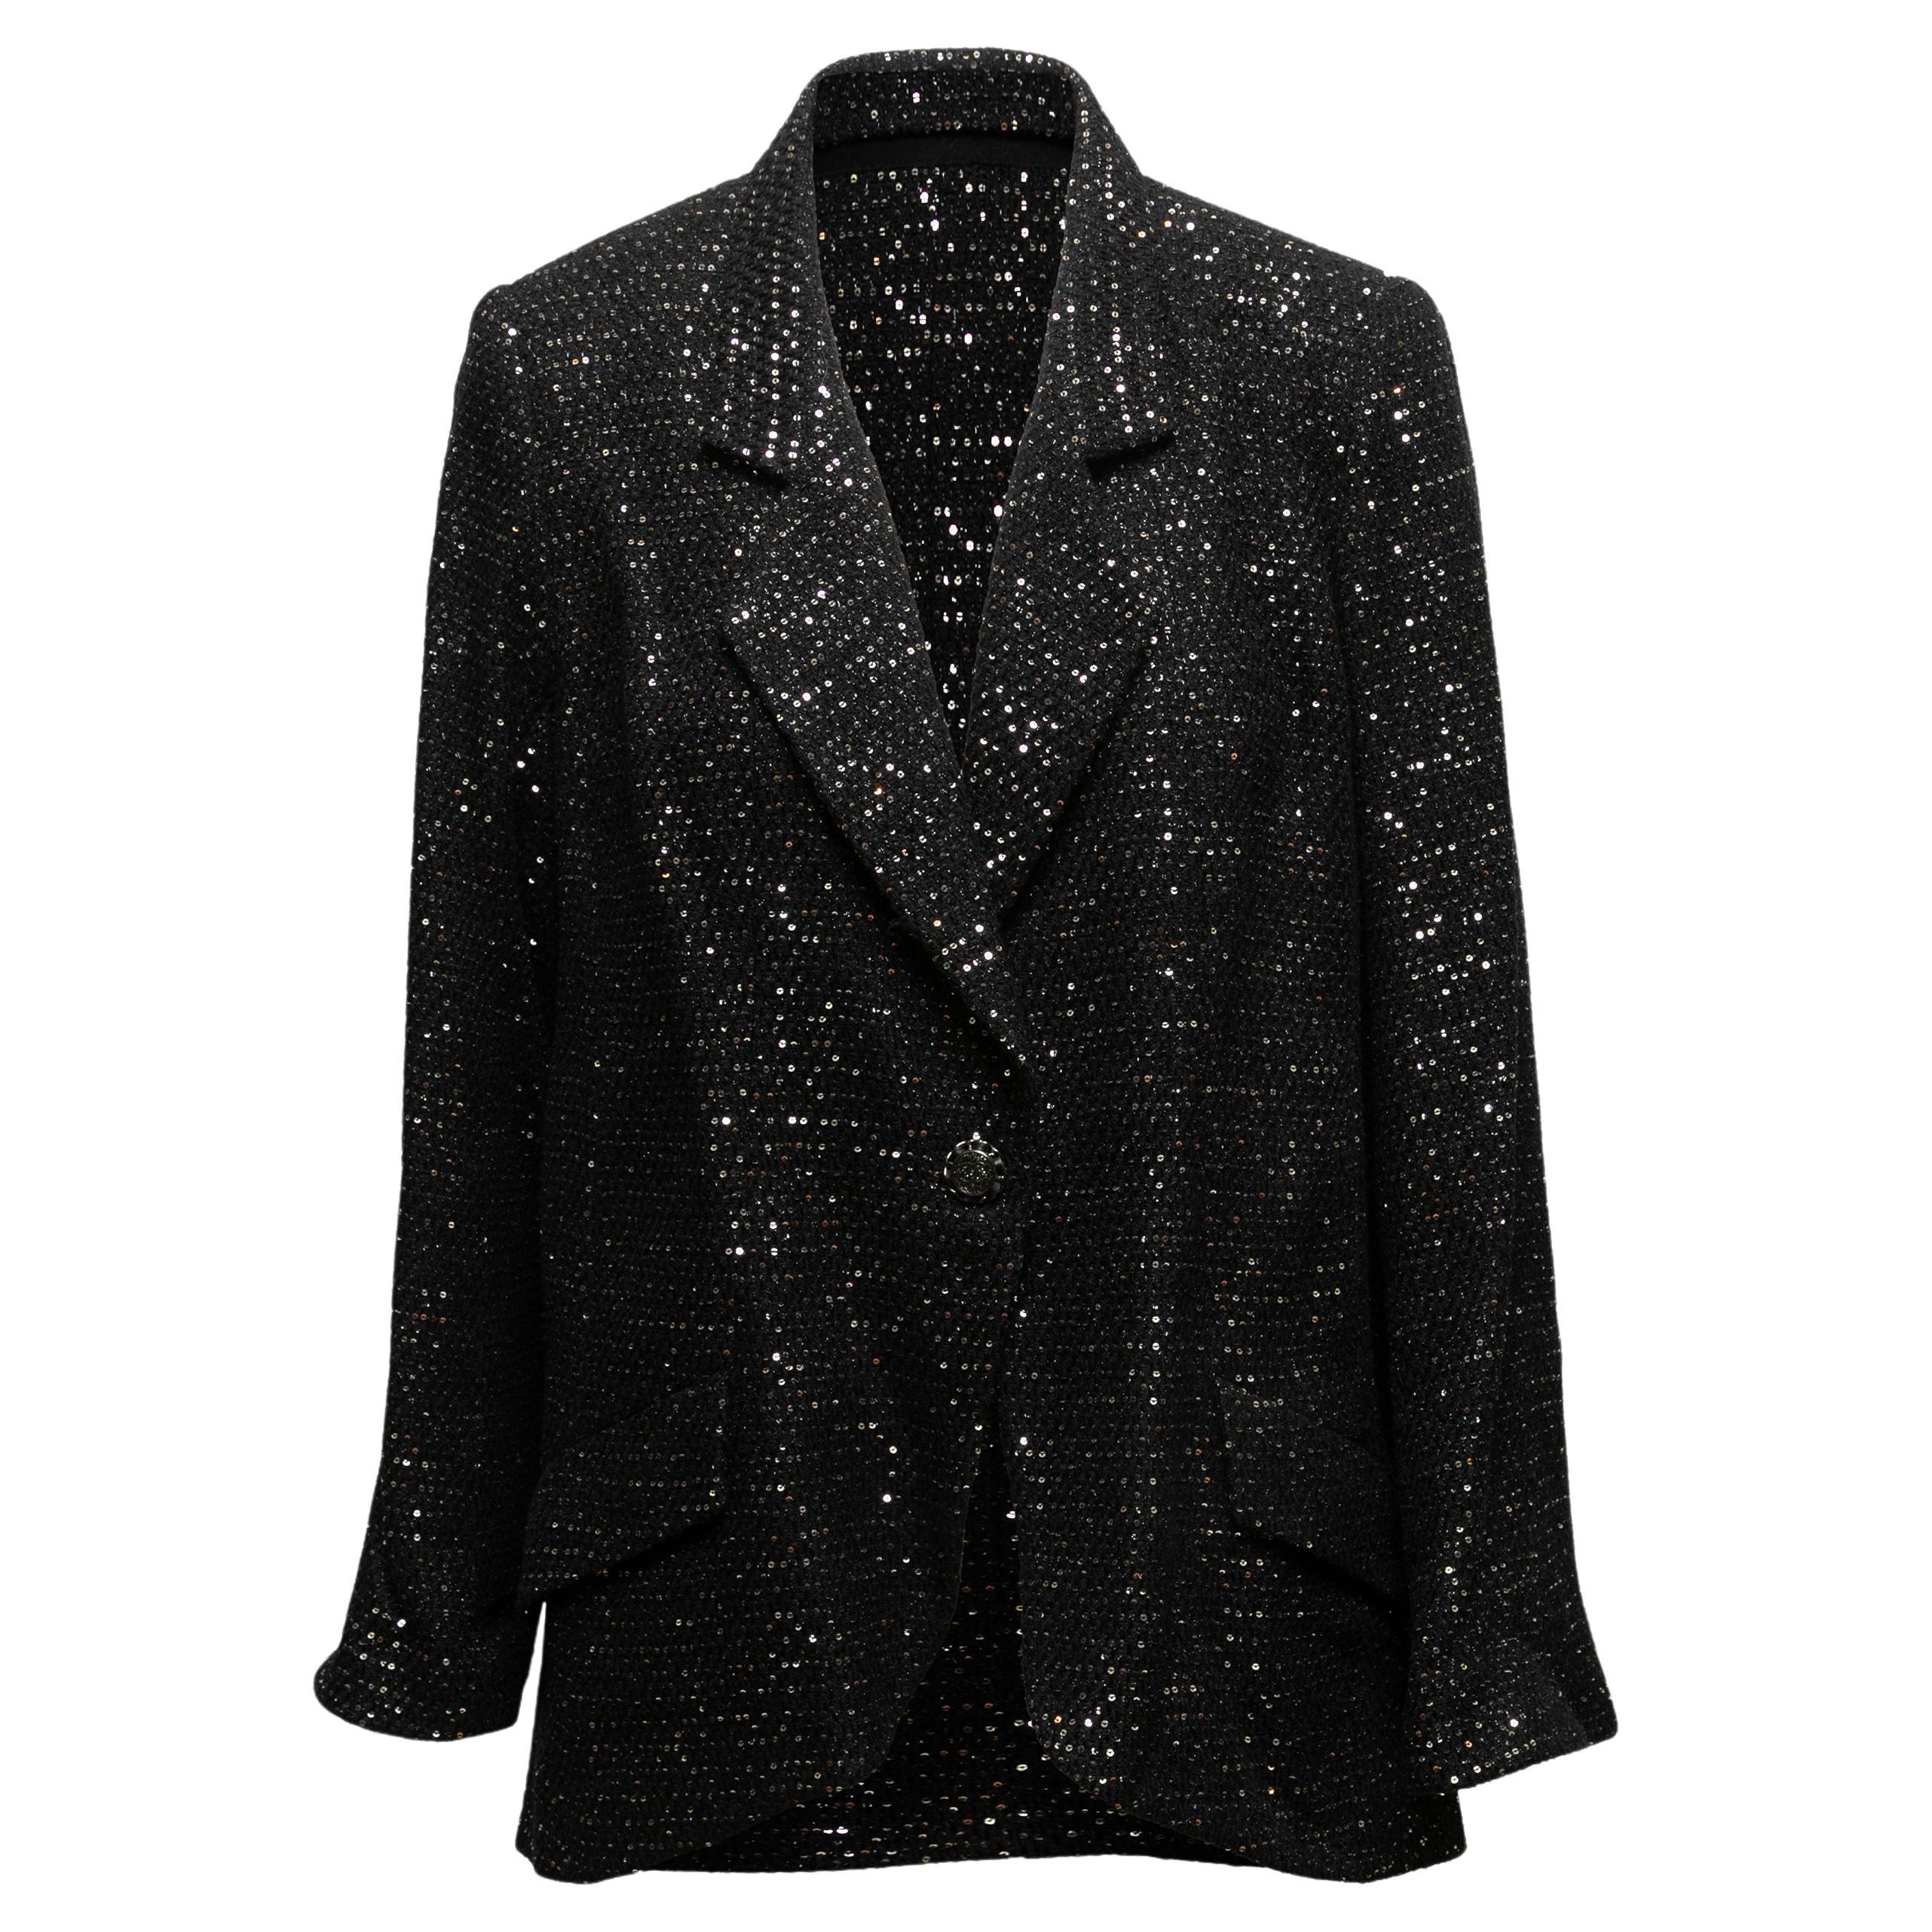 Blazer en tweed noir et argent Chanel Cruise 2011 St. Tropez Taille FR 48 en vente